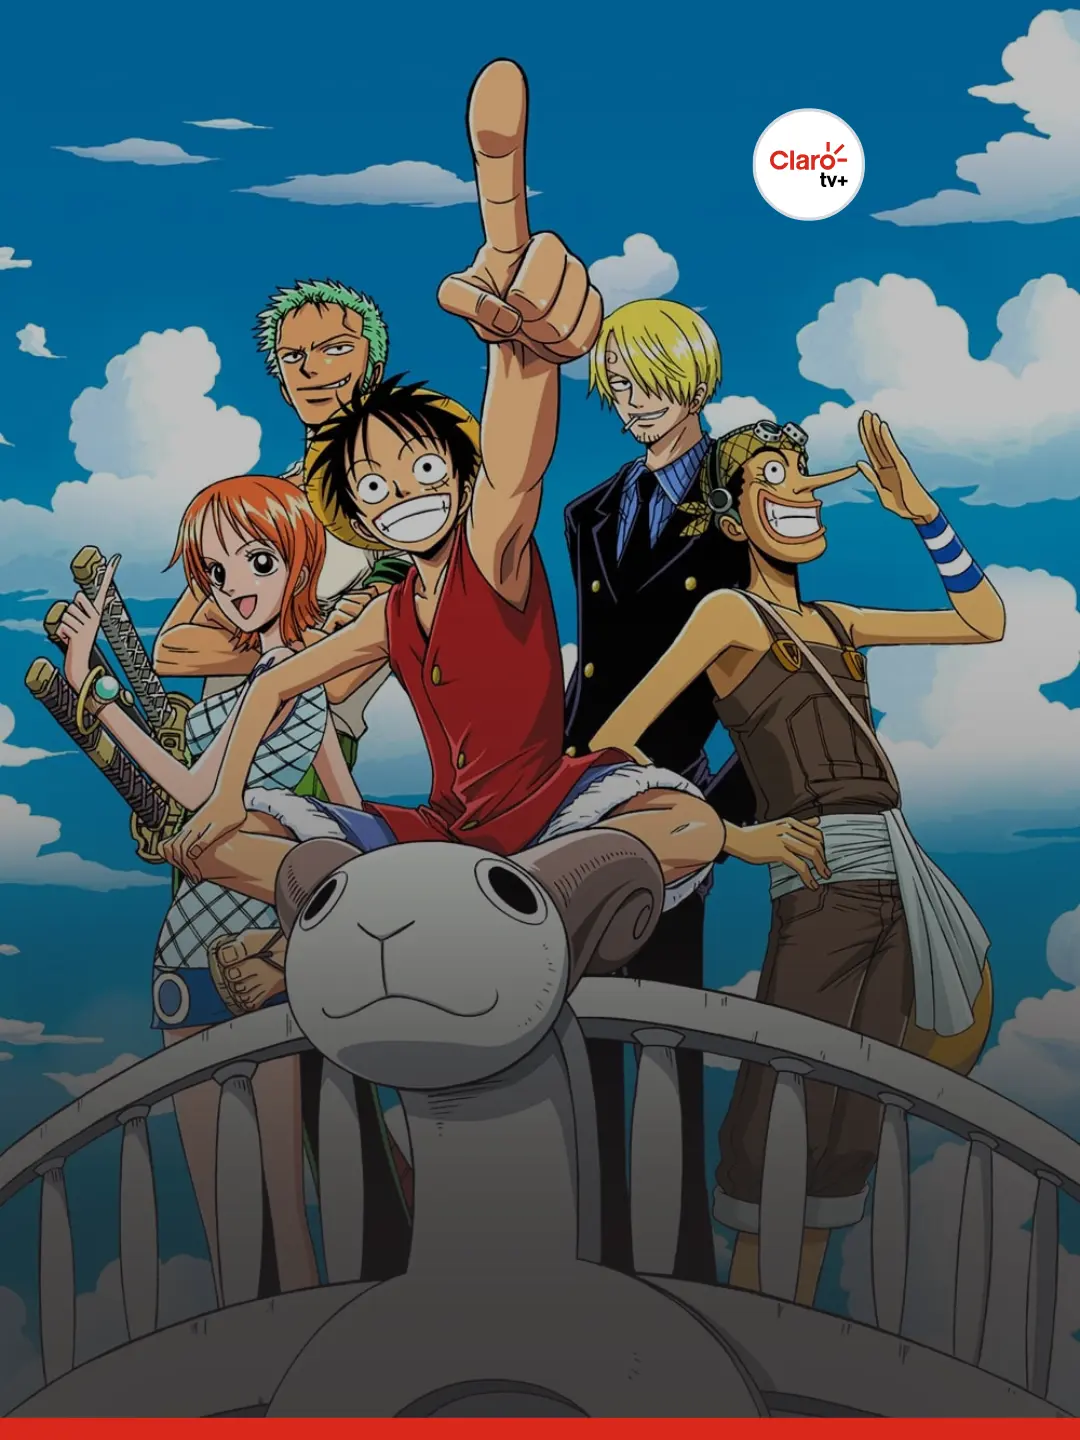 10 motivos para ler ou assistir One Piece agora mesmo! - Zona do Guaxinim